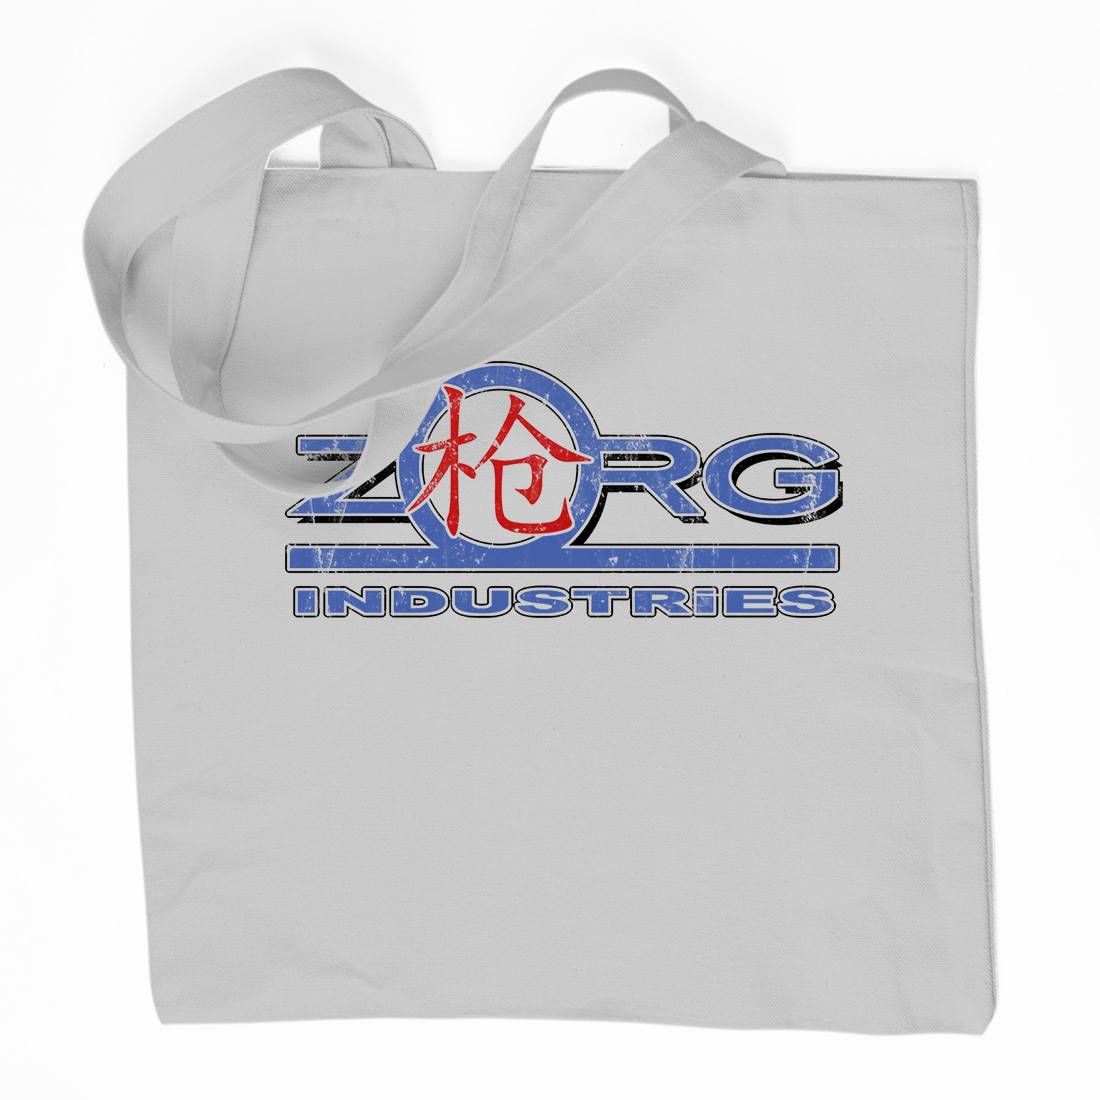 Zorg Ind Organic Premium Cotton Tote Bag Space D105